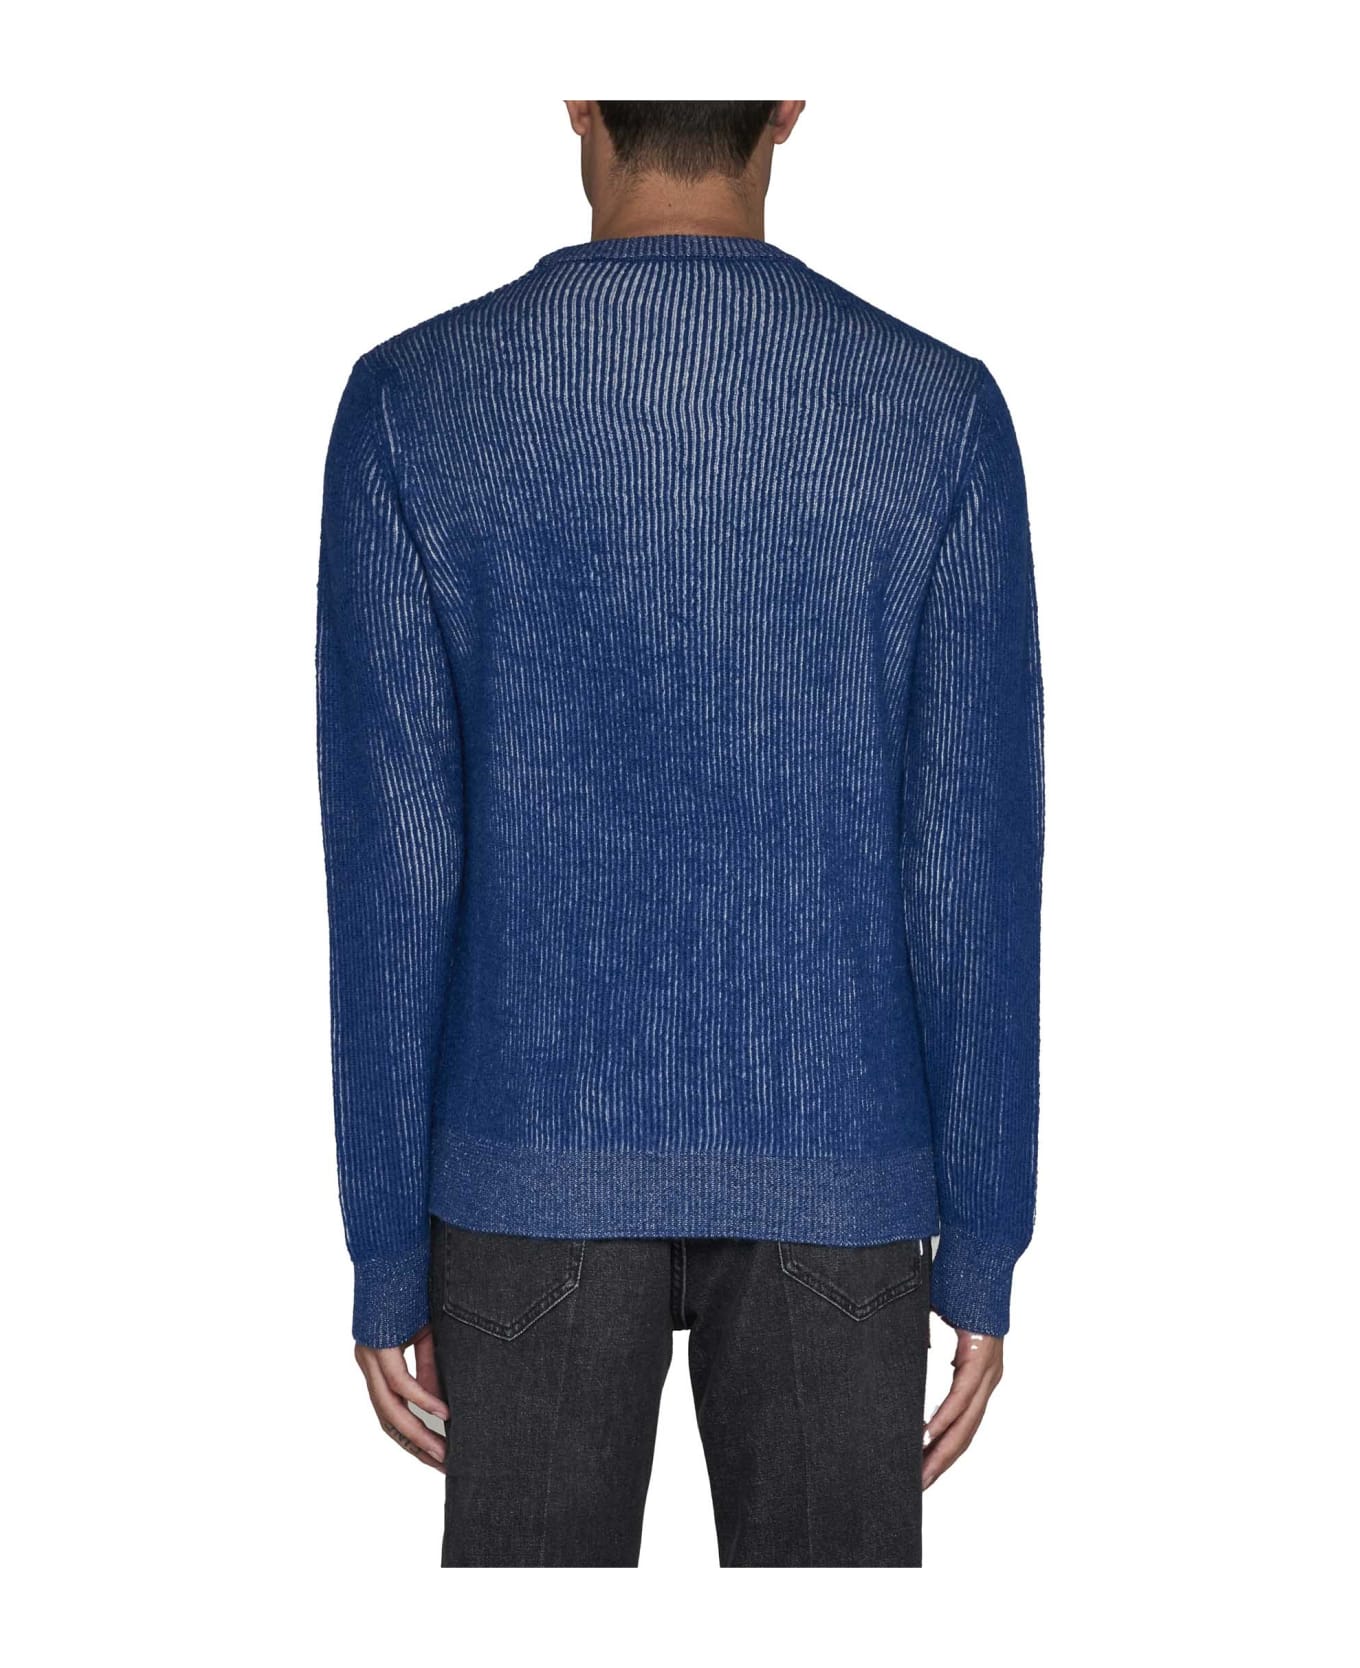 Roberto Collina Sweater - Bluette